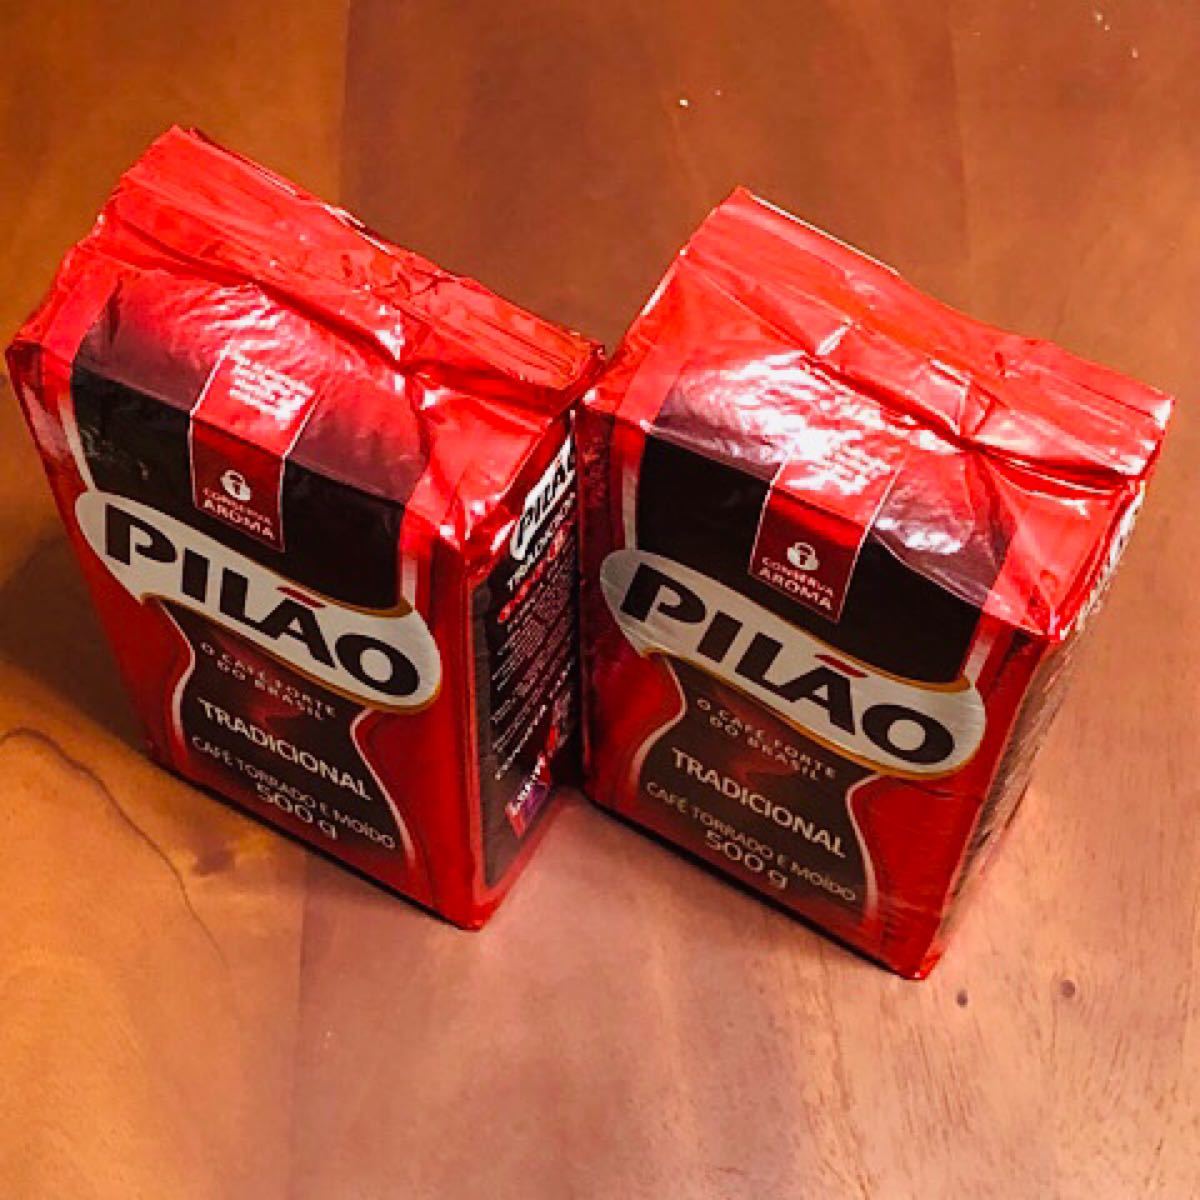 ブラジルコーヒー　PILAO　500g  2個